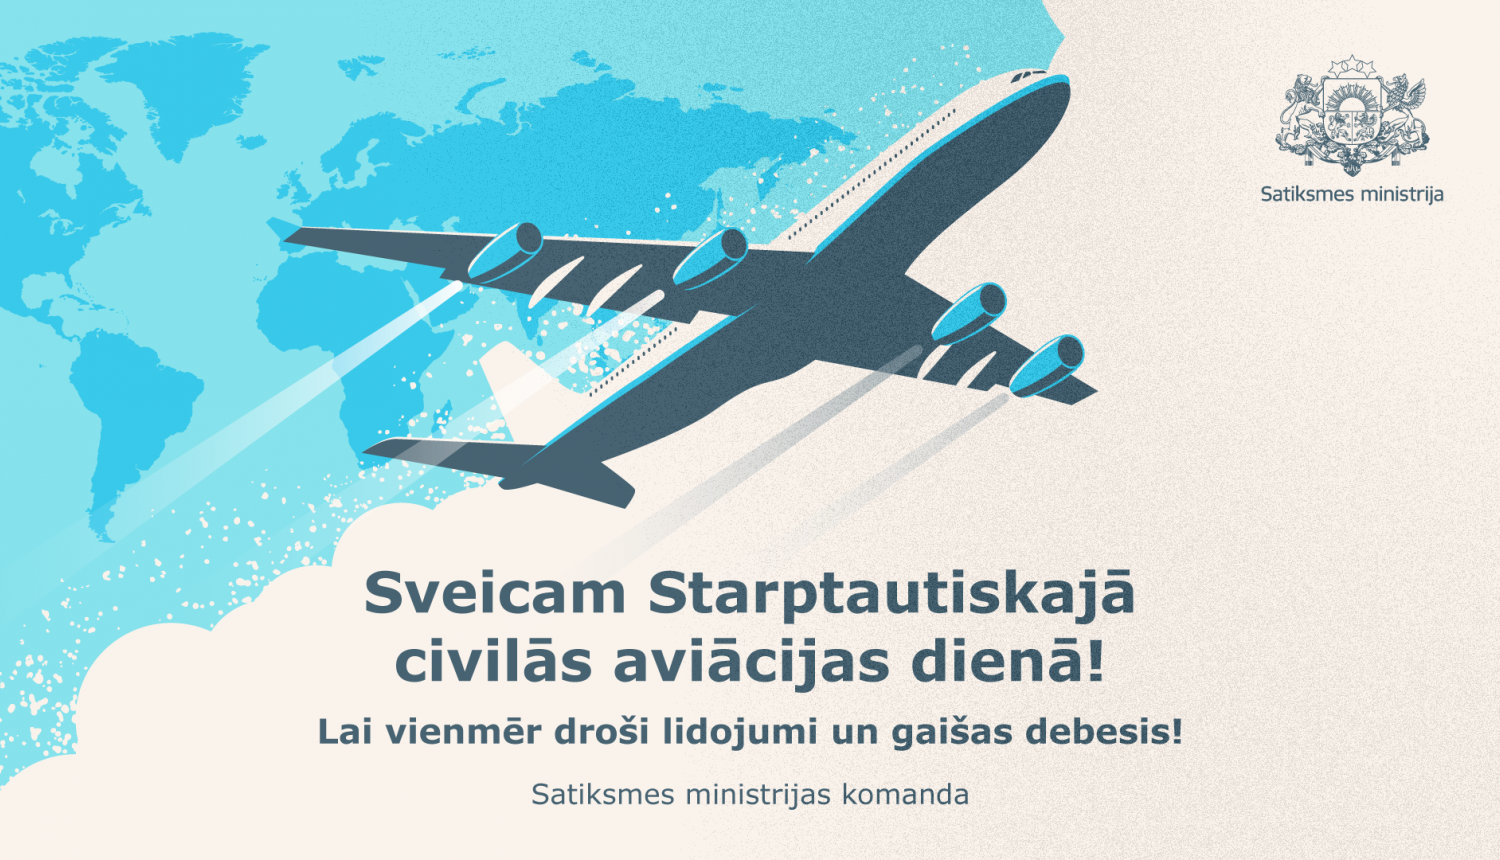 Sveicam Starptautiskajā civilās aviācijas dienā!